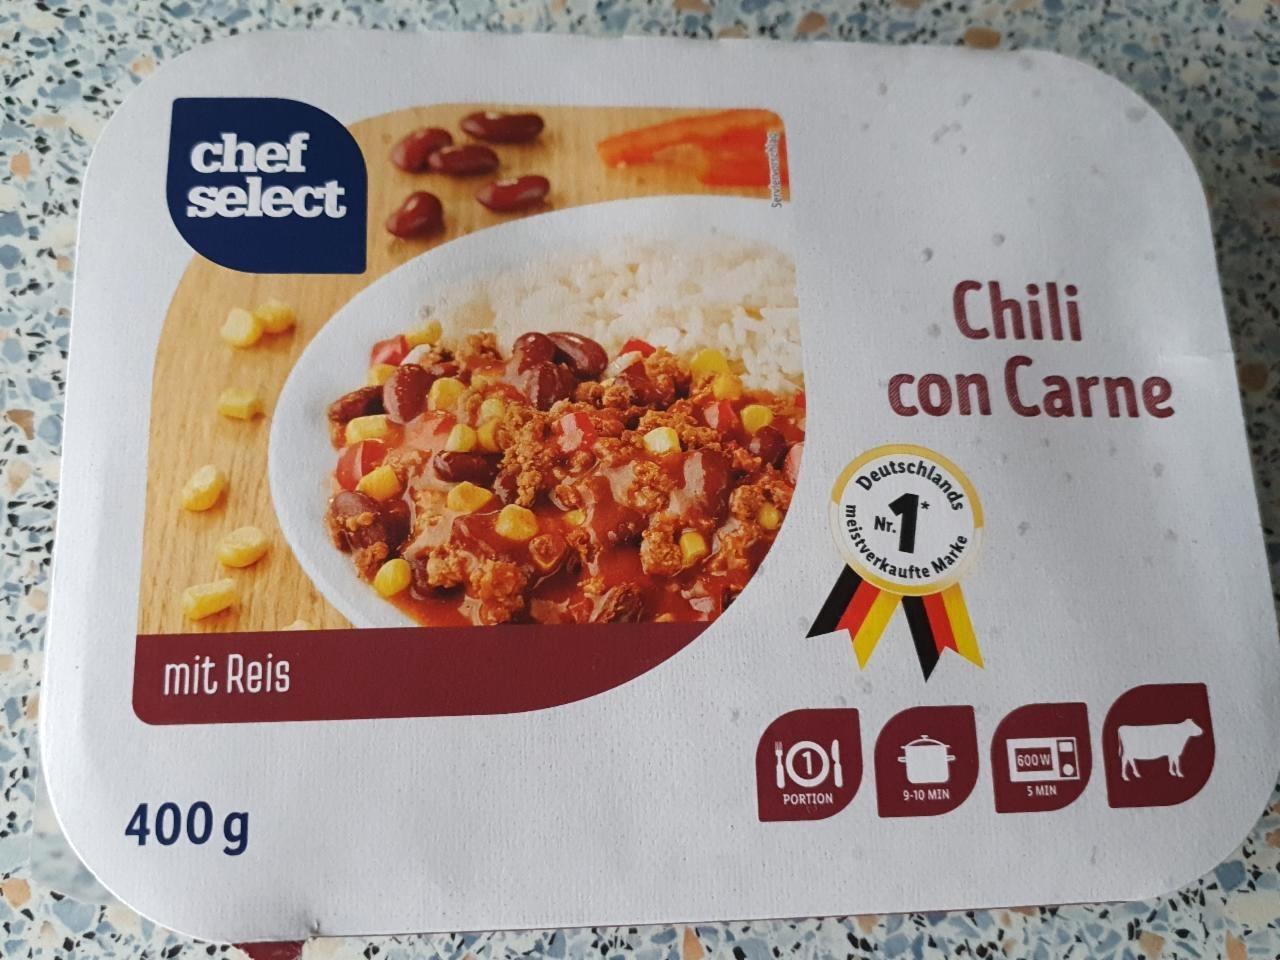 Képek - Chili con carne Chef Select